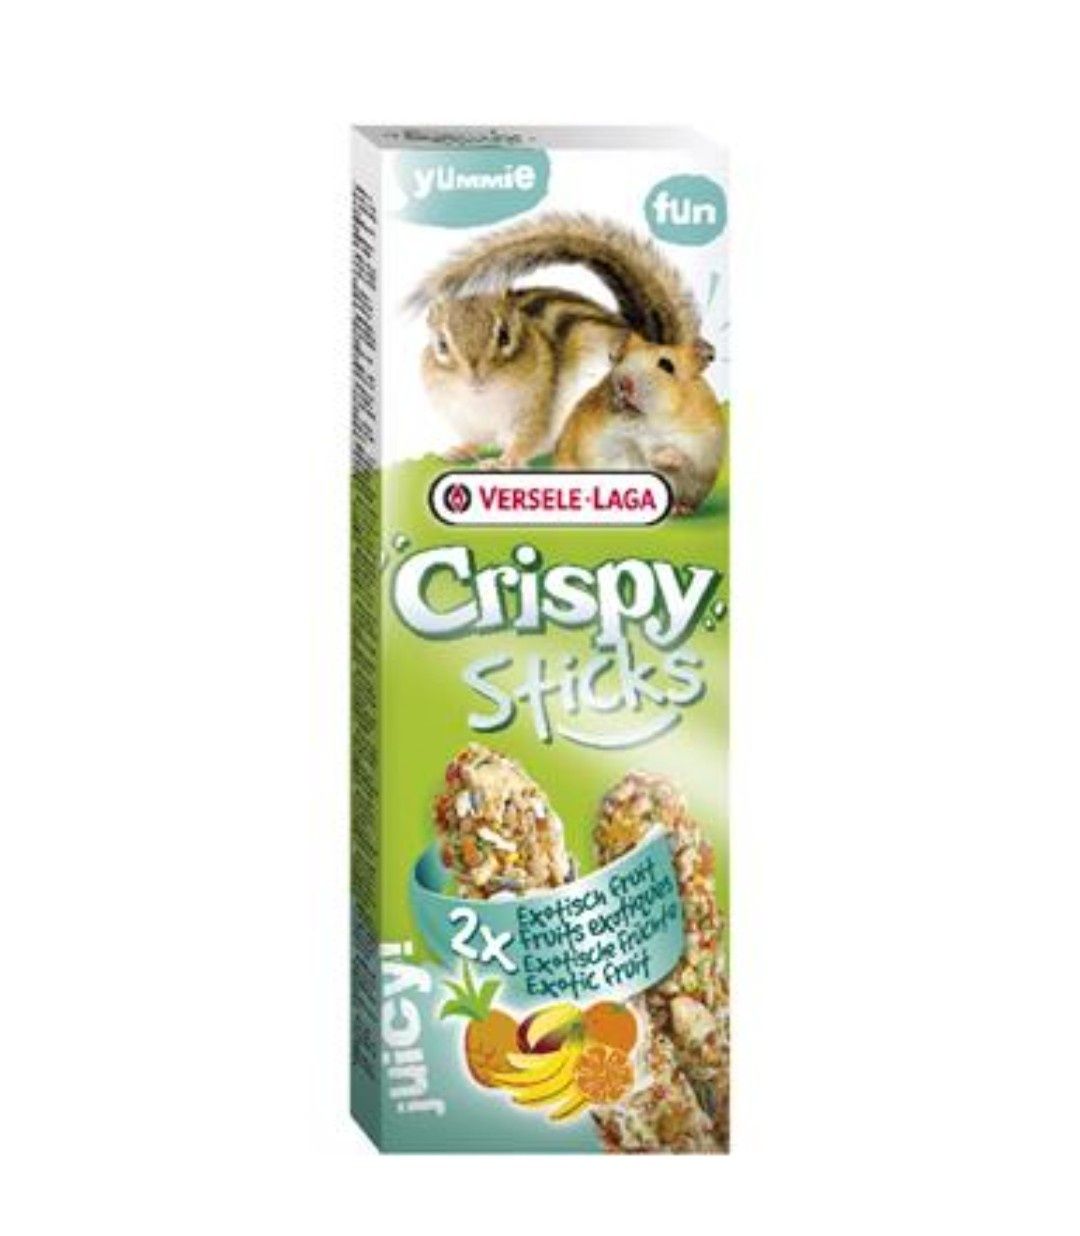 VL-Crispy Sticks Hamsters-Squirrels Exotic Fruit 110g - 2 kolby owoce